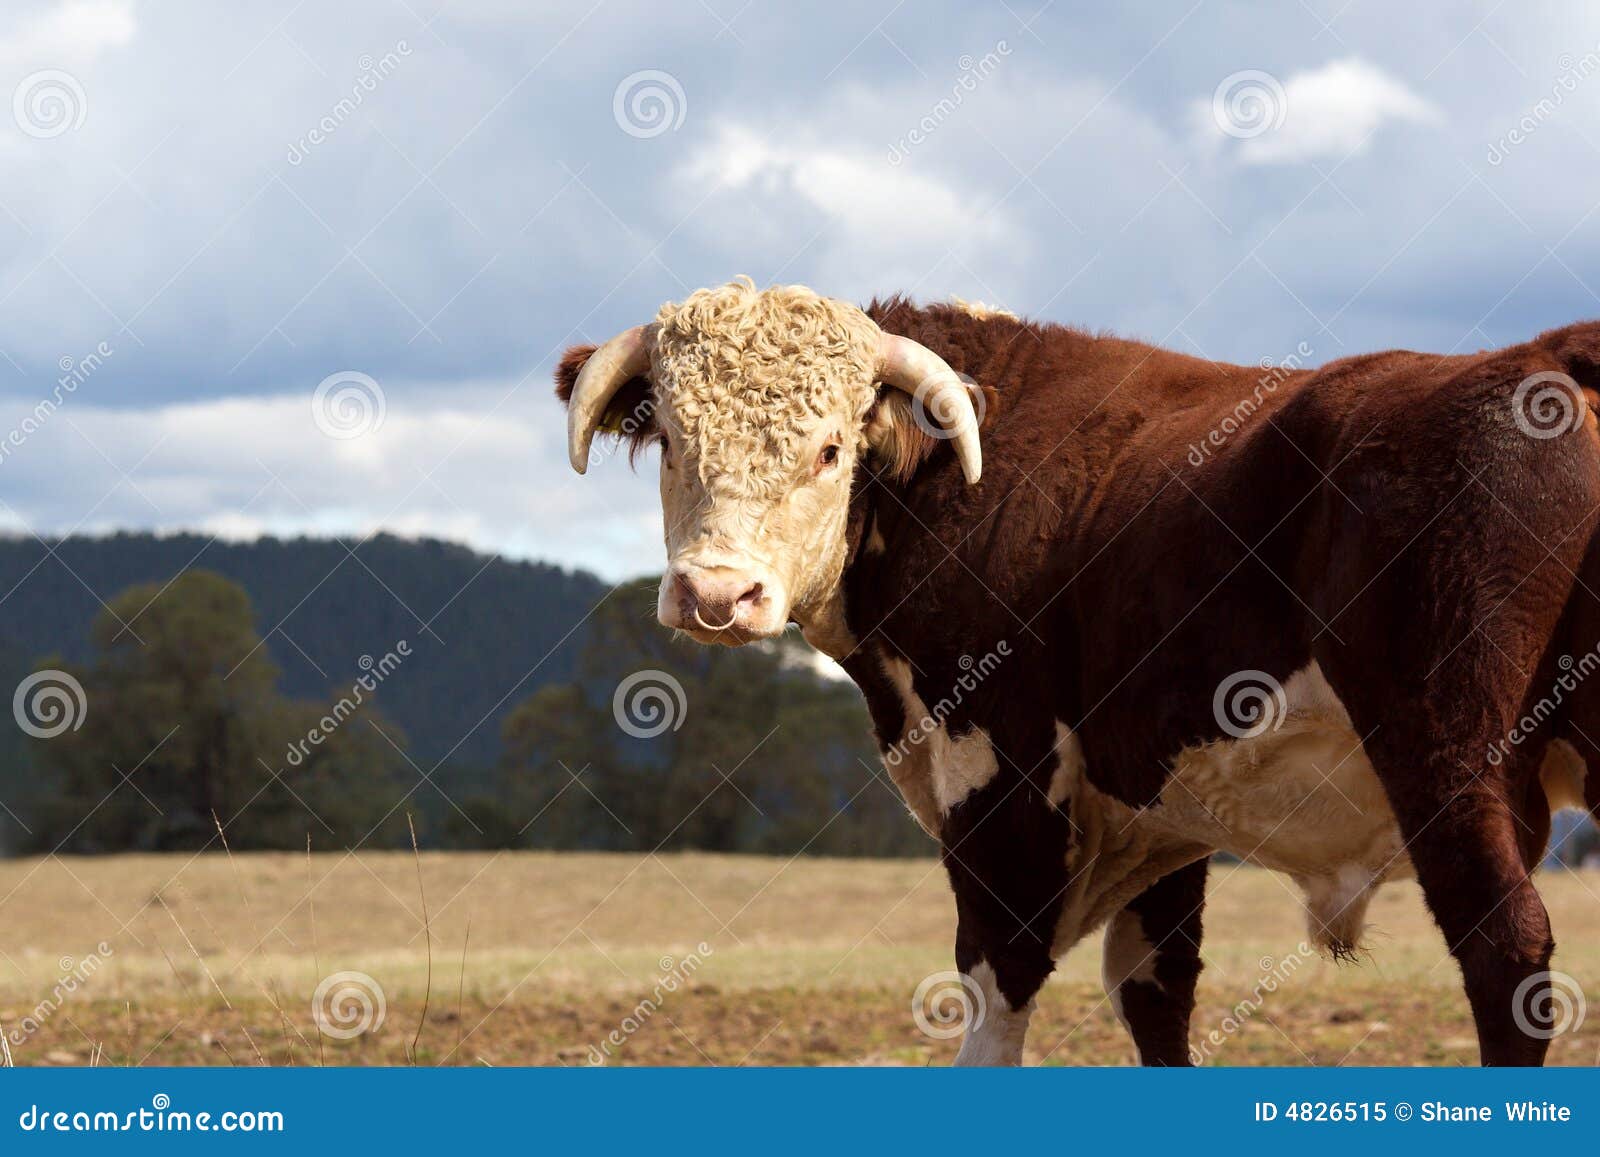 hereford bull.